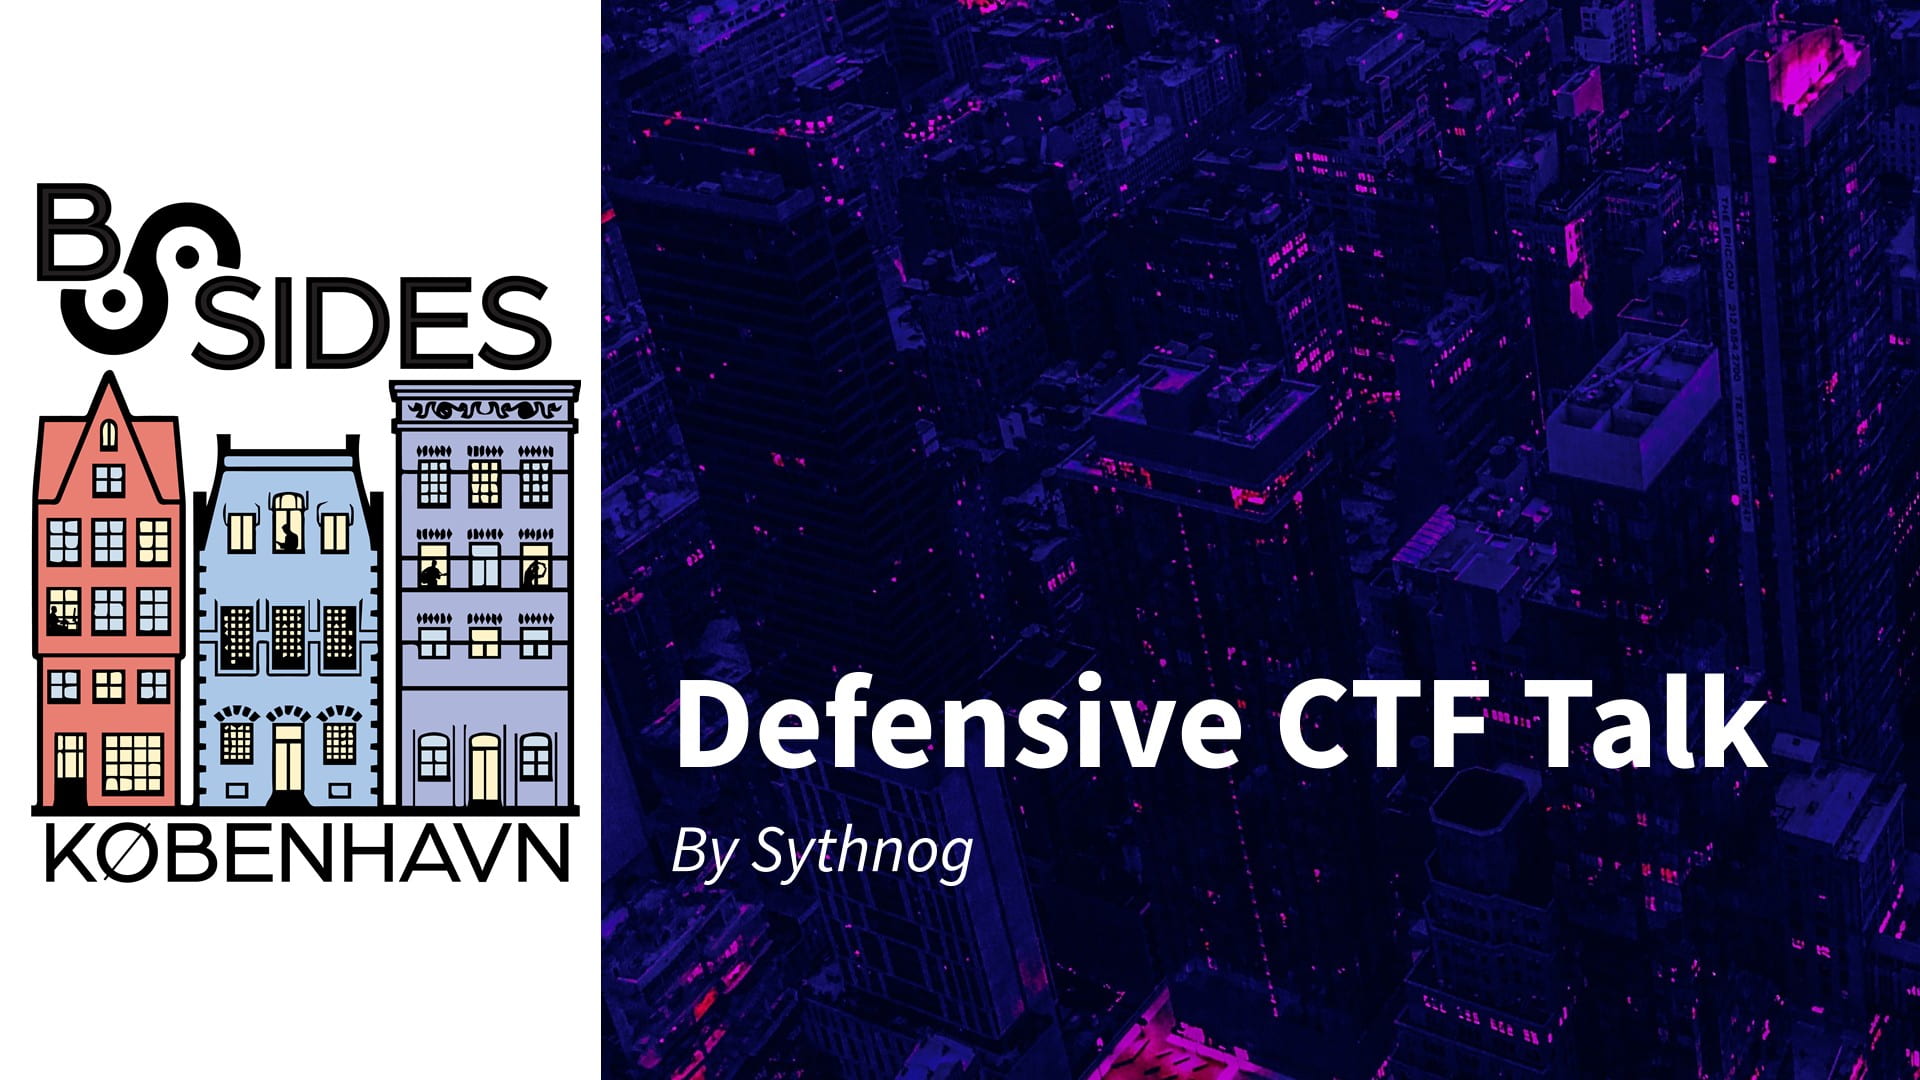 Image of the BSides København 2021 logo and defensive CTF talk.